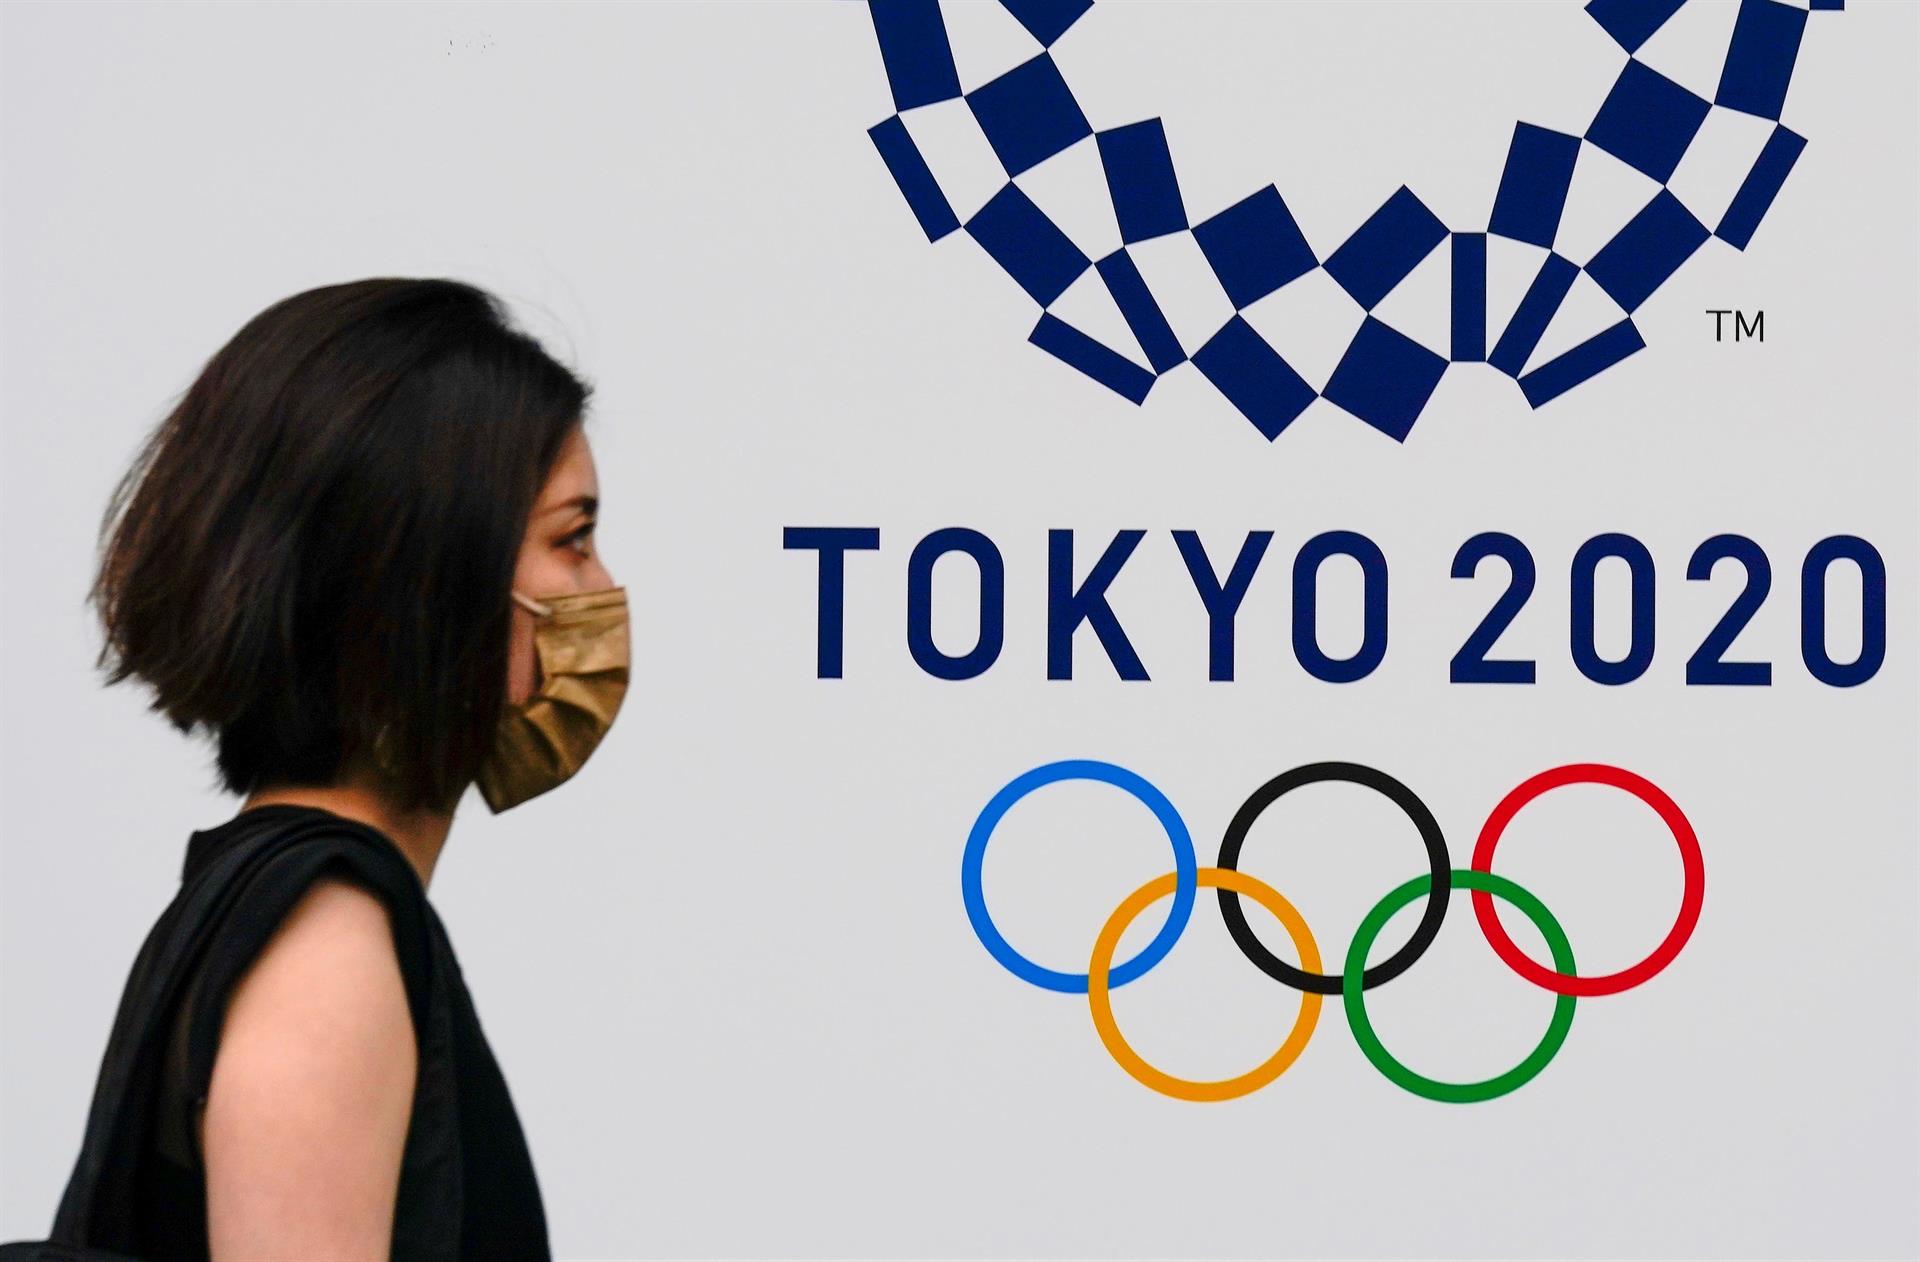 Mulher usando máscara de proteção facial passa diante de logo dos Jogos Olímpicos de Tóquio